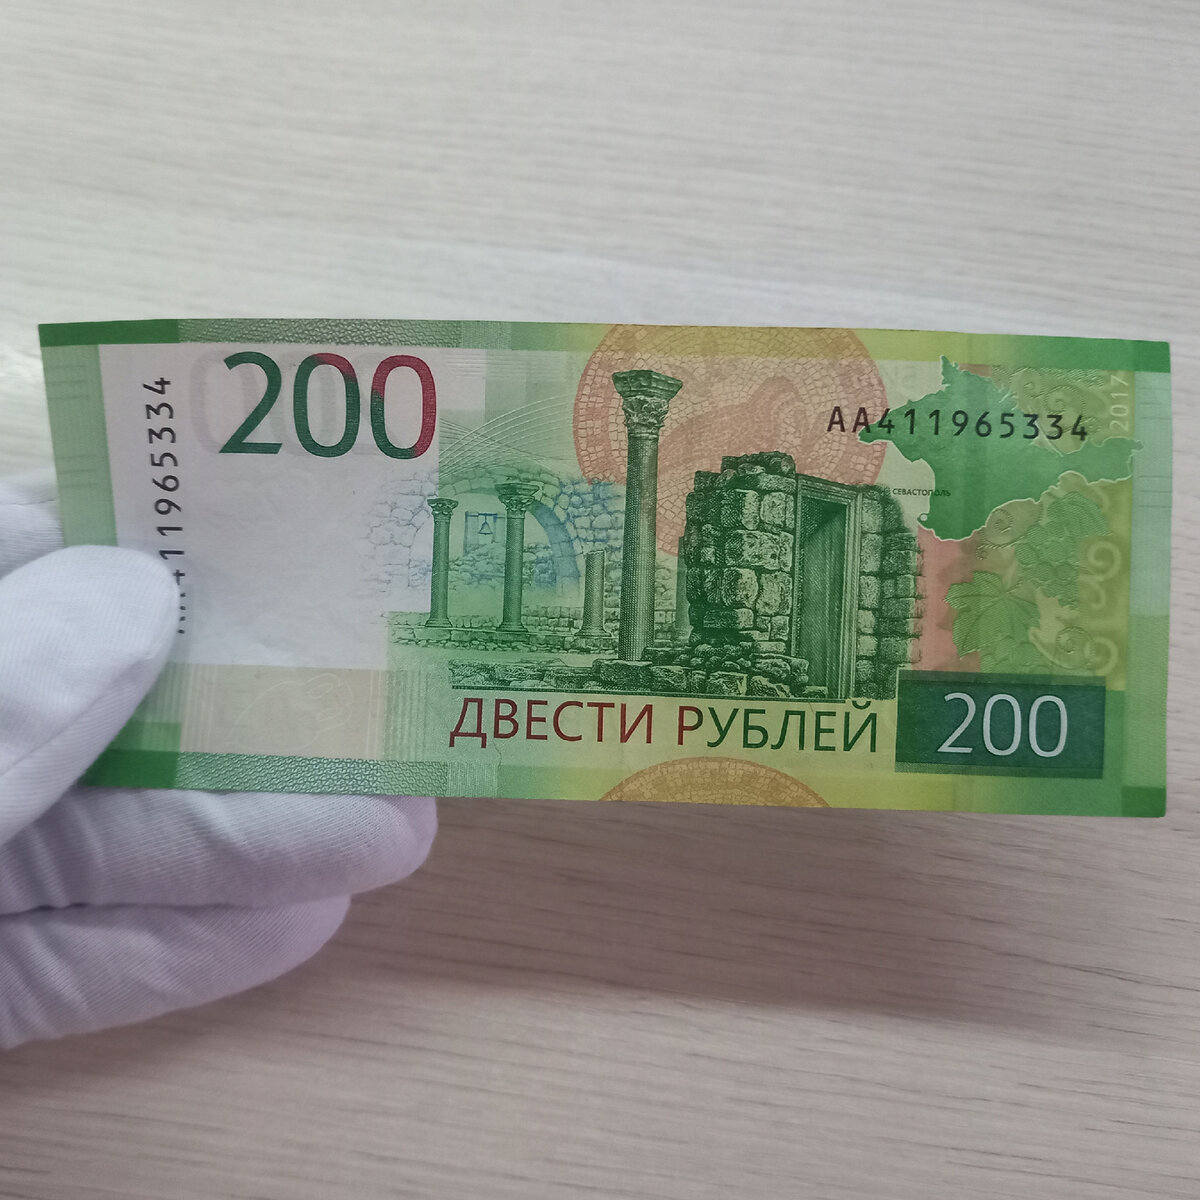 200 рублей быстро. 200 Рублей банкнота. 200 Рублей бумажные. 200 Руб новые. Новая 200 рублевая купюра.